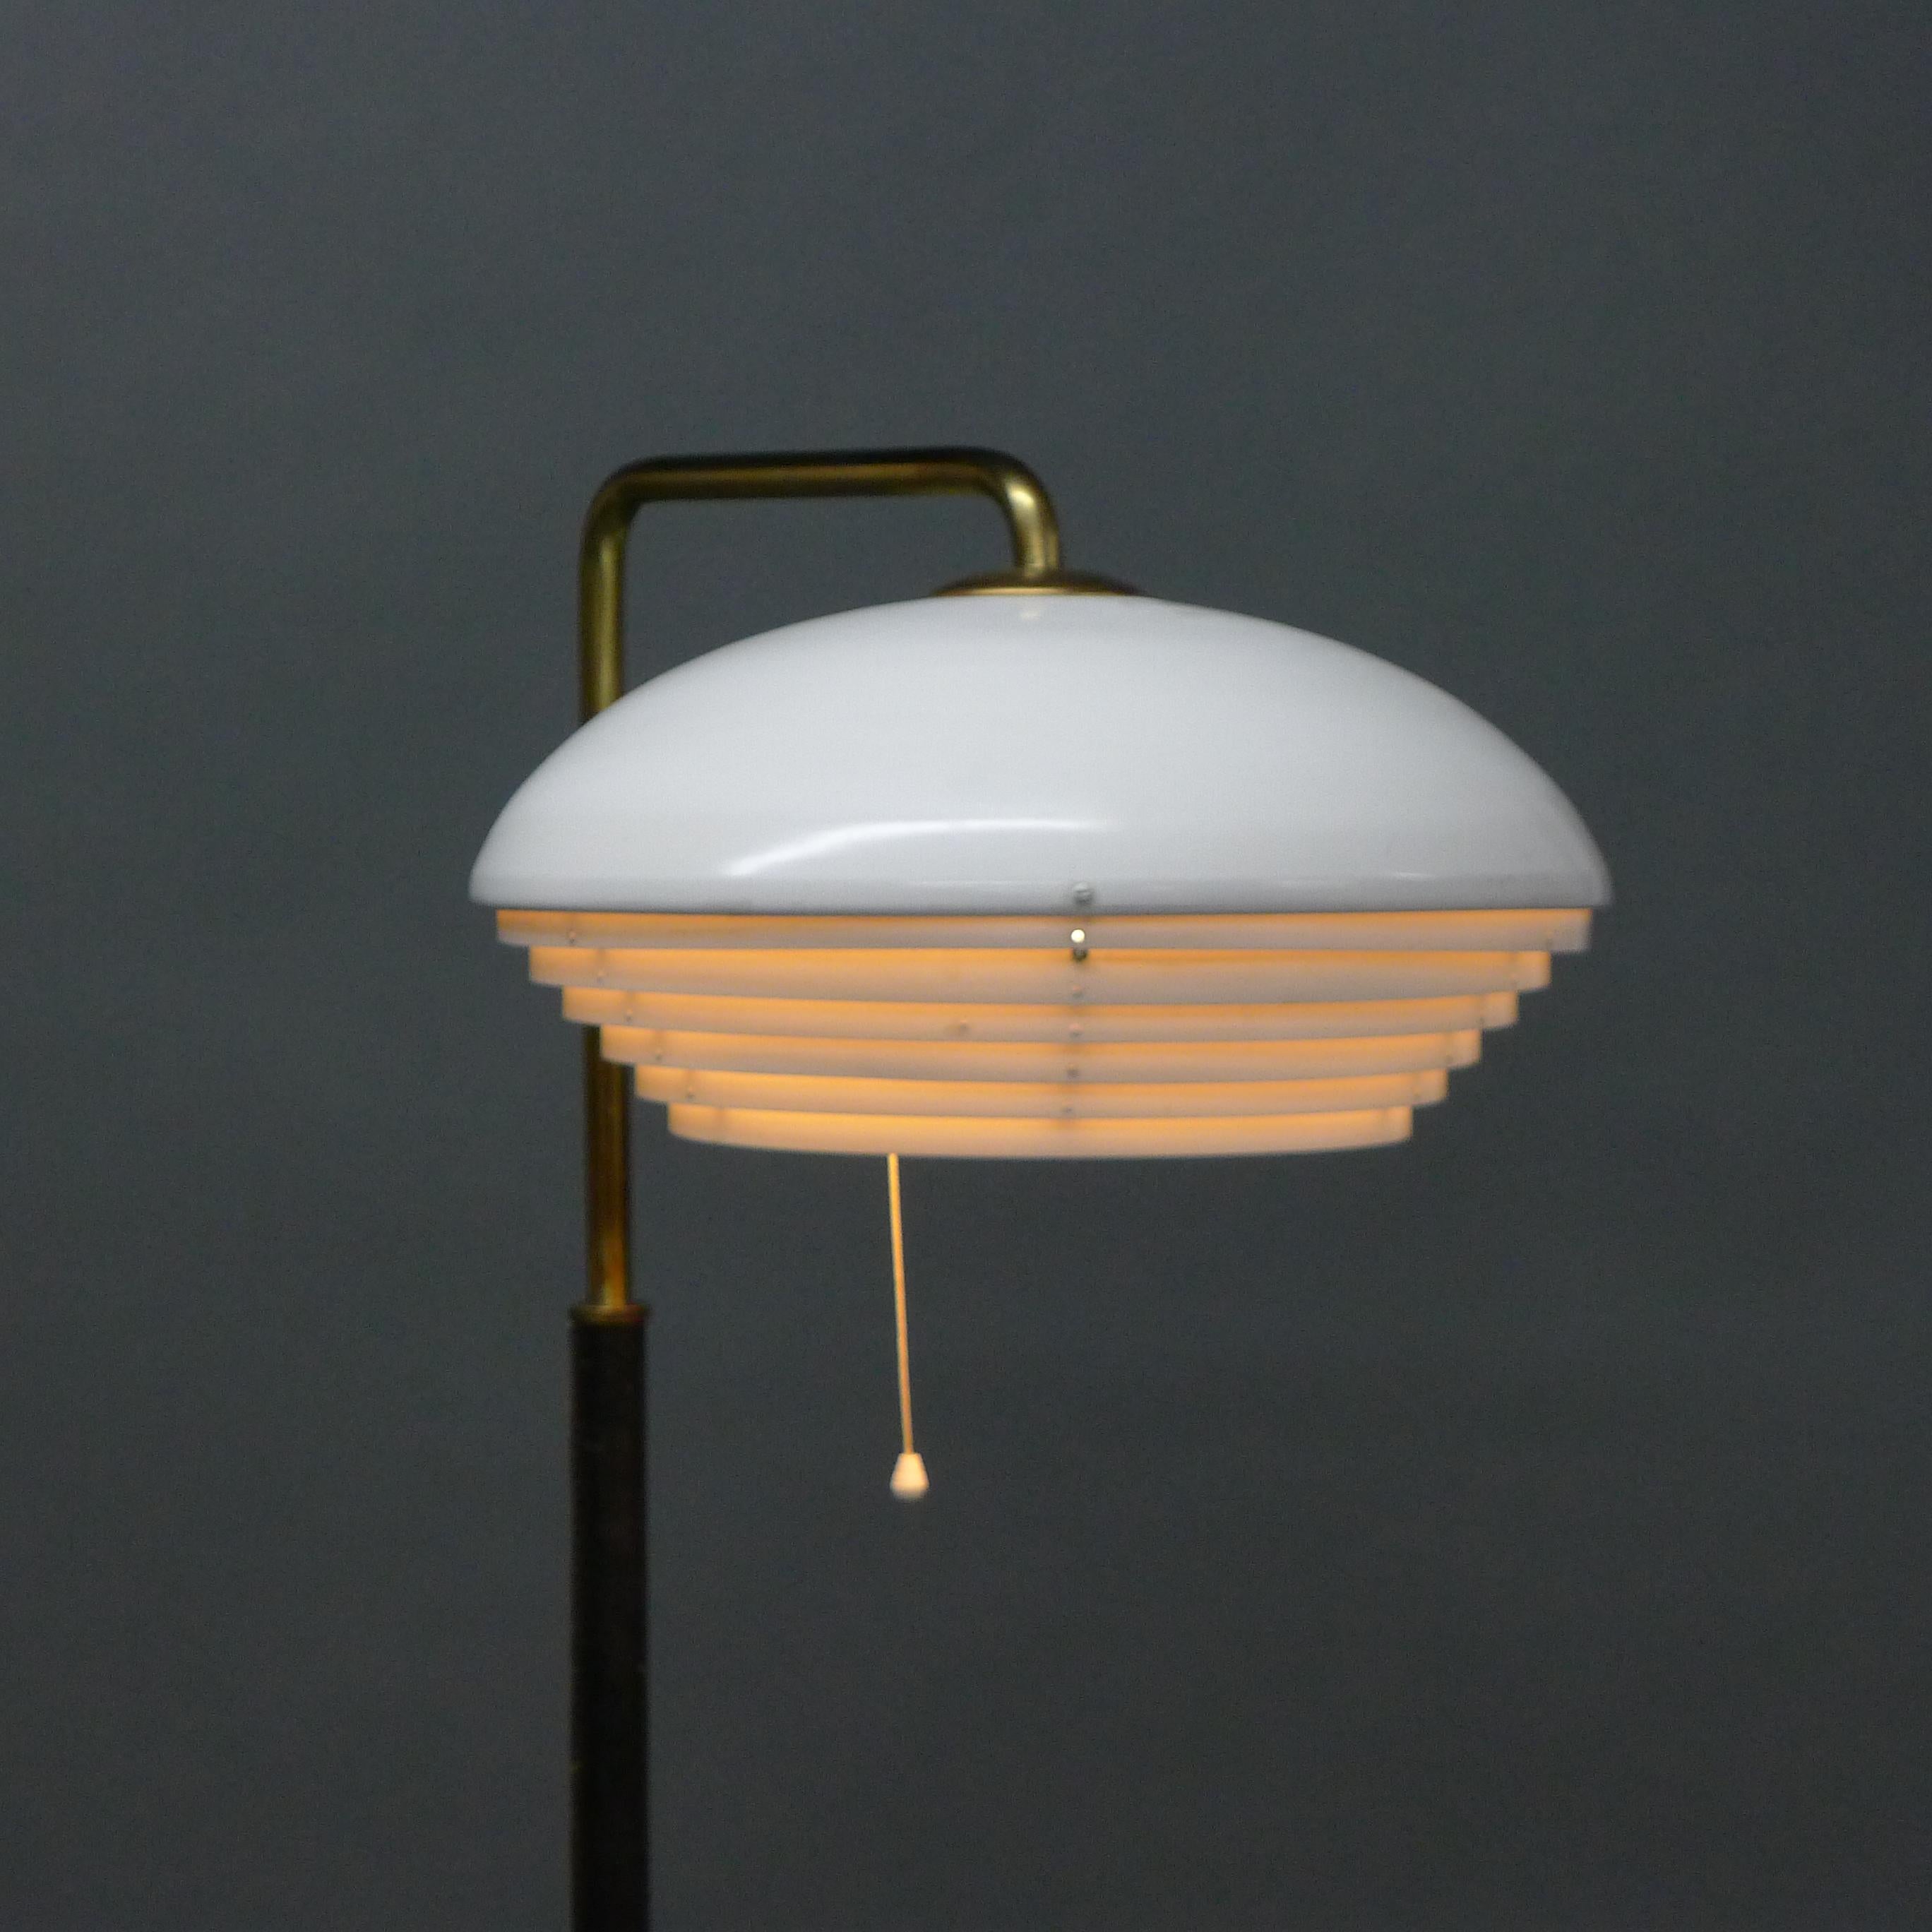 Alvar Aalto Modell A811 Stehleuchte, hergestellt von Valaistustyö, Finnland 1950er Jahre.

Diese originelle Stehlampe hat einen weiß lackierten, gerasterten Metallschirm auf einem Messinghals, der in einen lederbezogenen Mast und Sockel übergeht. 